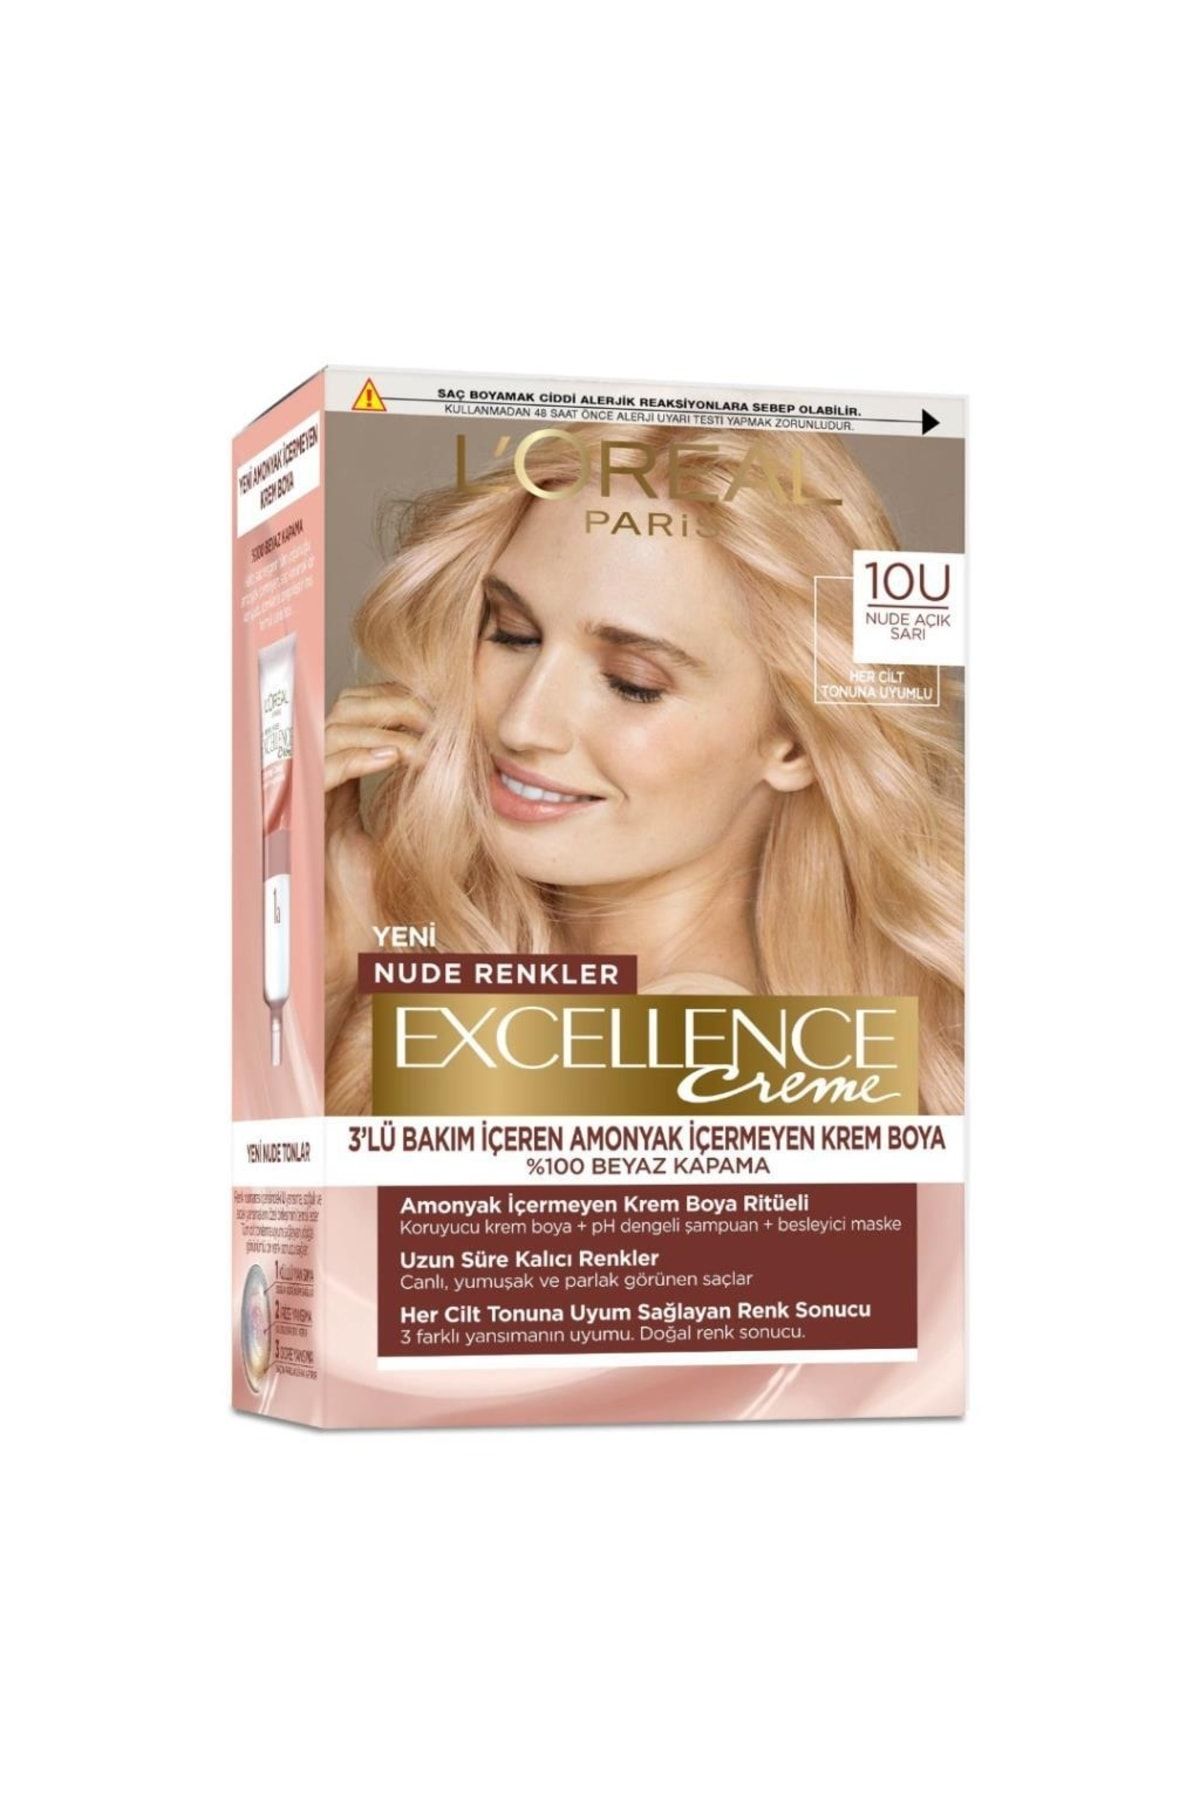 L'Oreal Paris L’oréal Paris Excellence Creme Nude Renkler Saç Boyası - 10u Nude Açık Sarı